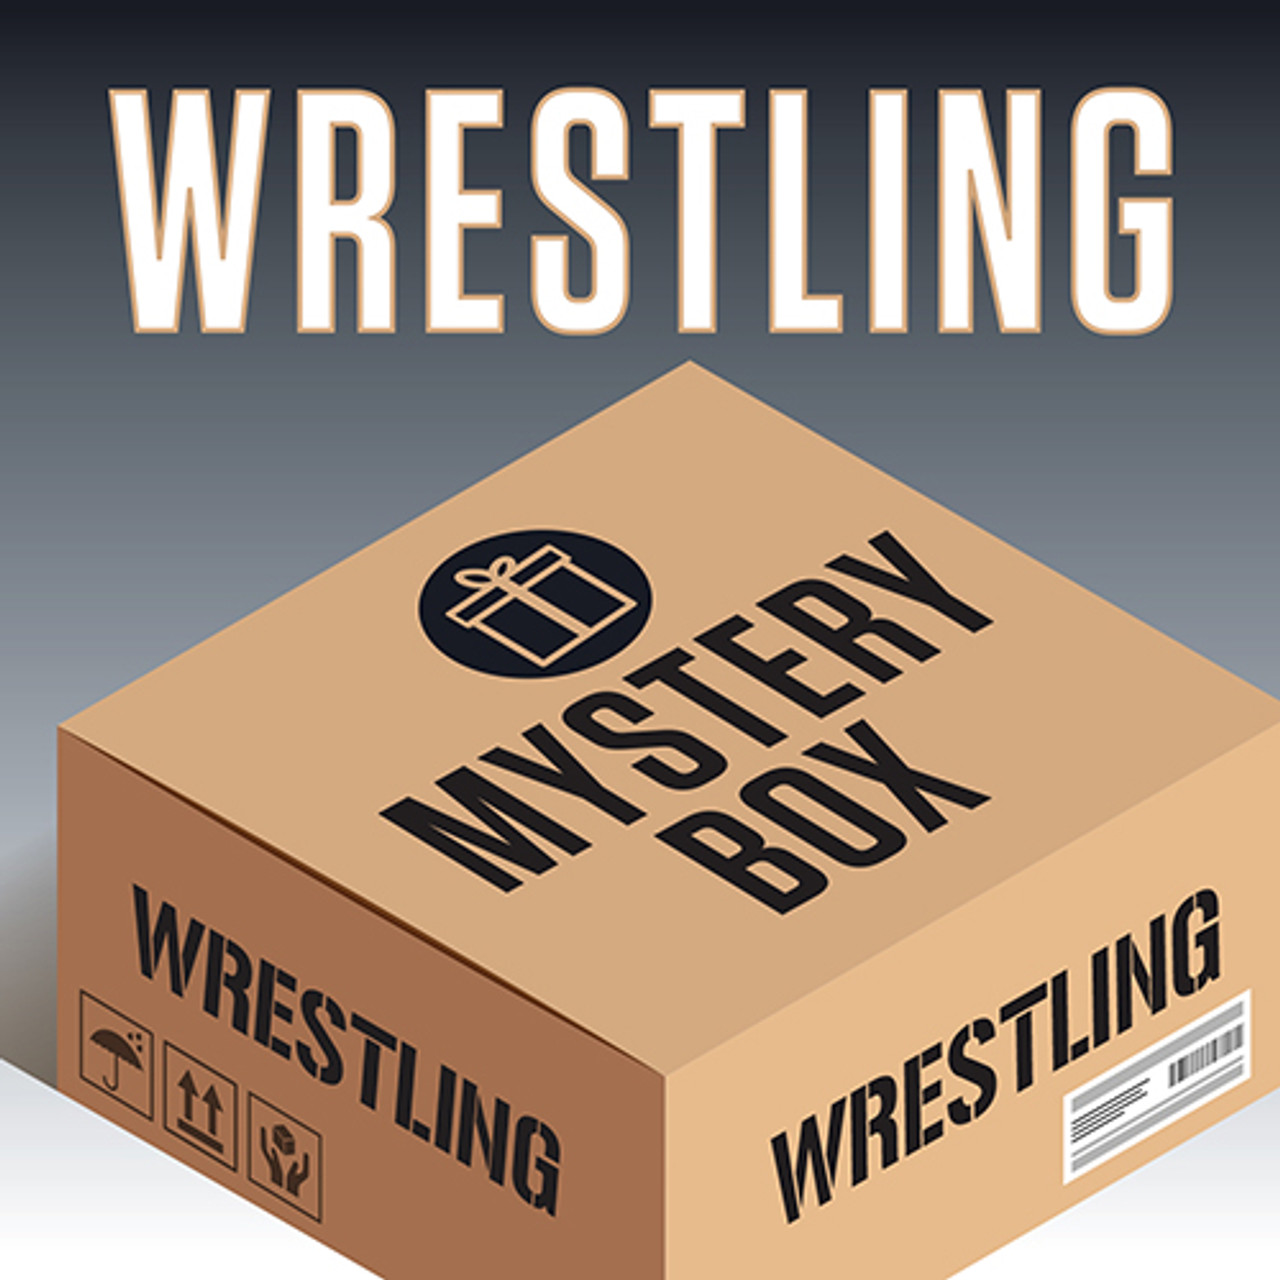 Mystery Box  Mystery box, Box, Mystery